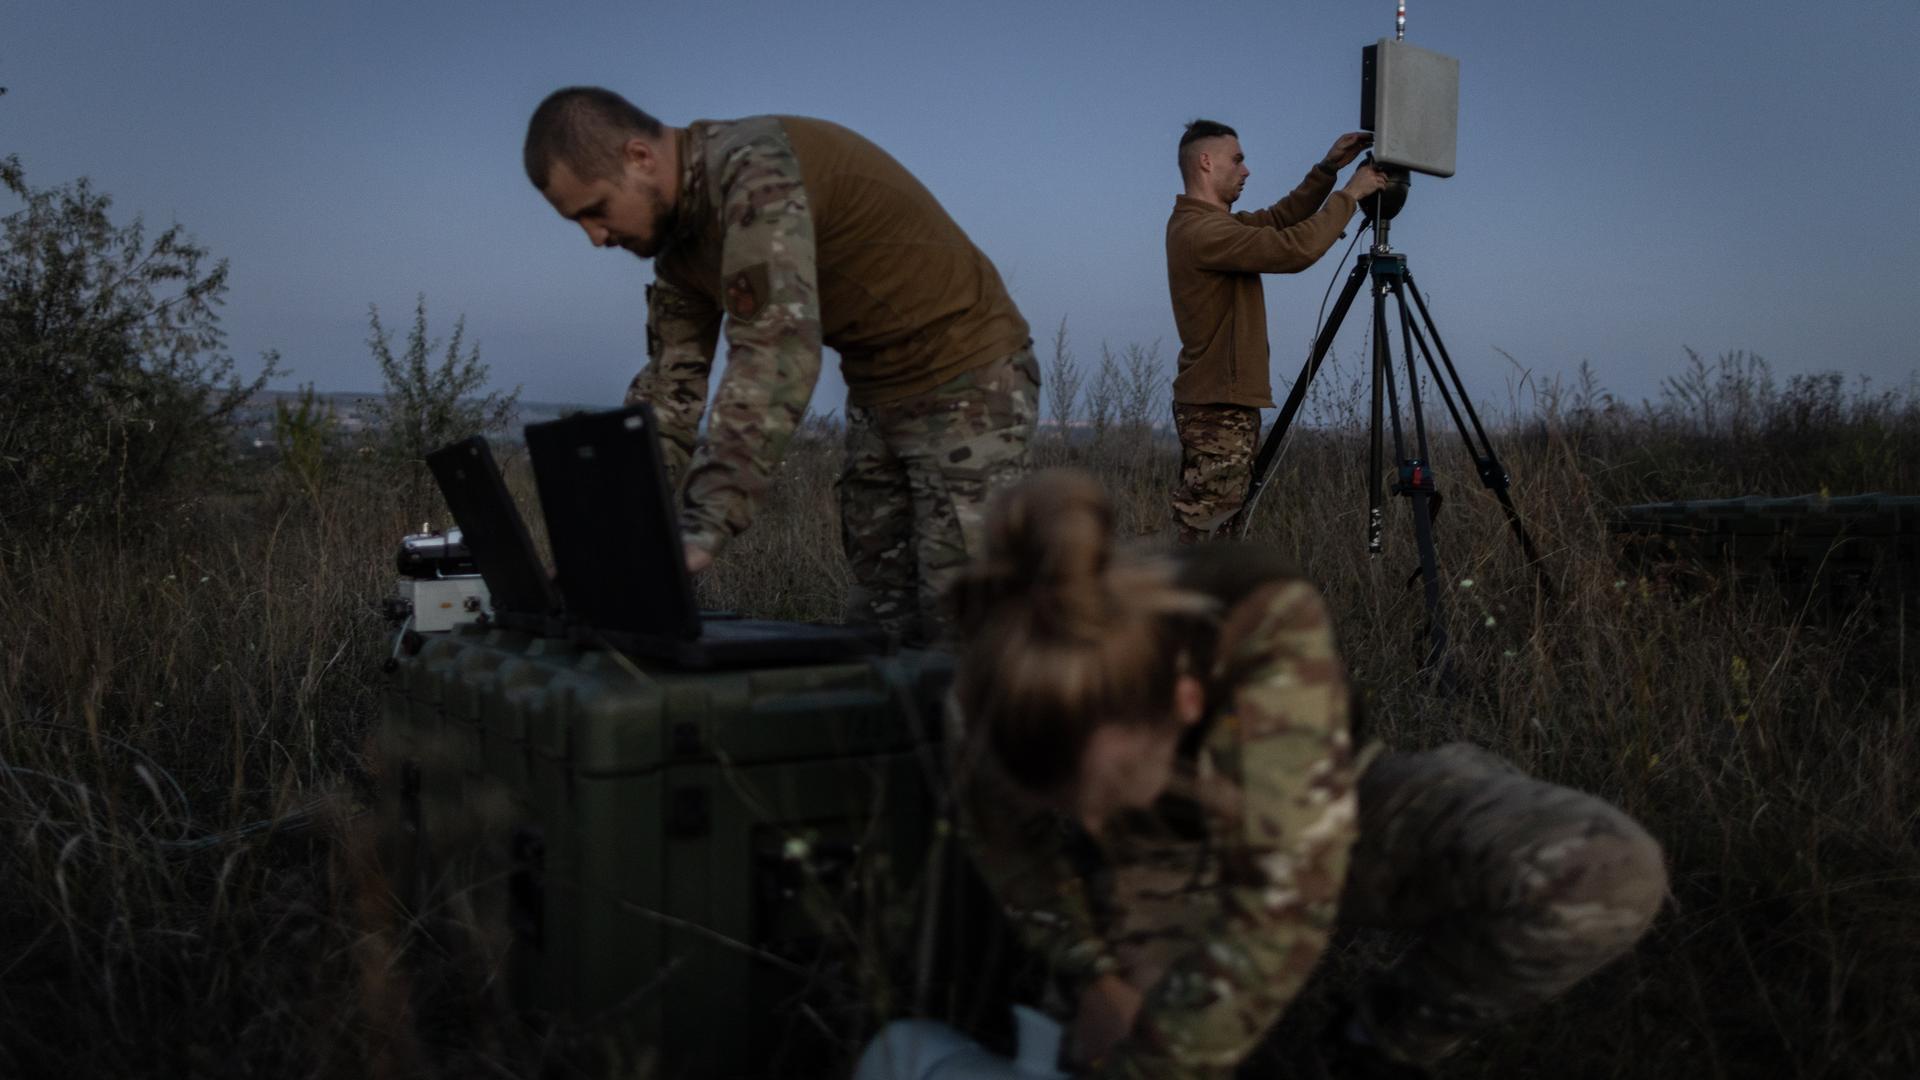 Ein ukrainischer Drohnentrupp bereitet eine Übung mit einer Leleka-Drohne vor. Zwei männliche und eine weibliche Soldatin im Feld bei Dämmerung.